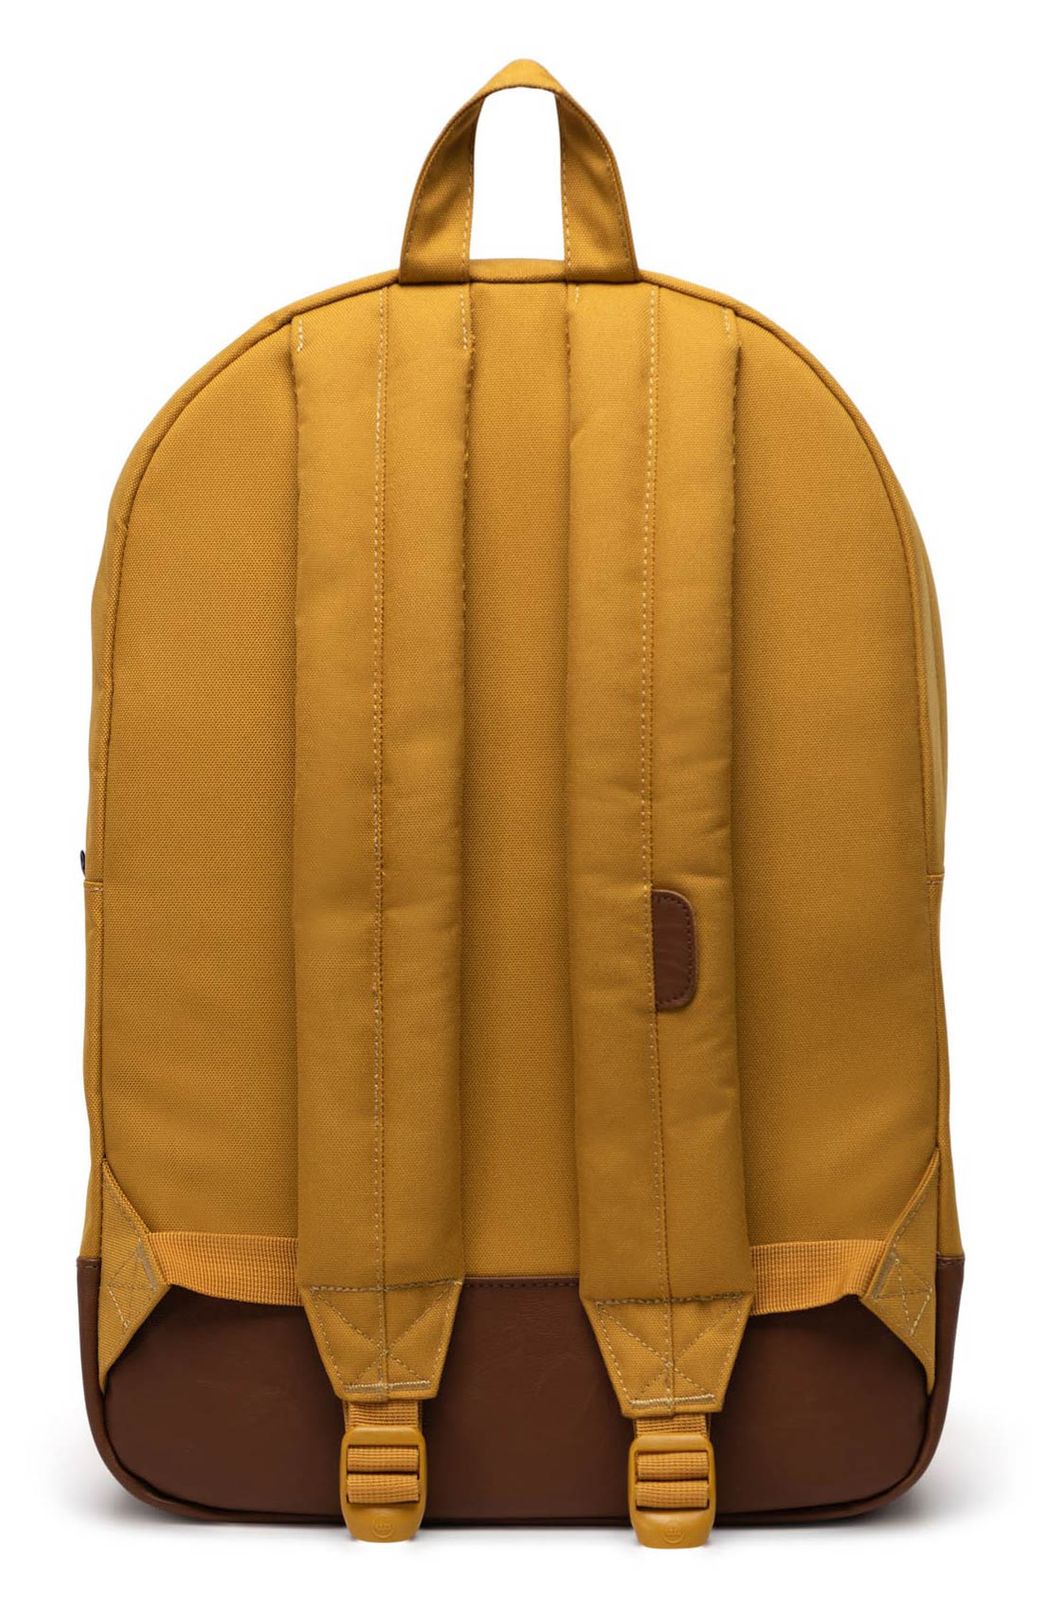 Herschel Backpack Harvest Gold | Buy bags, purses & accessories online